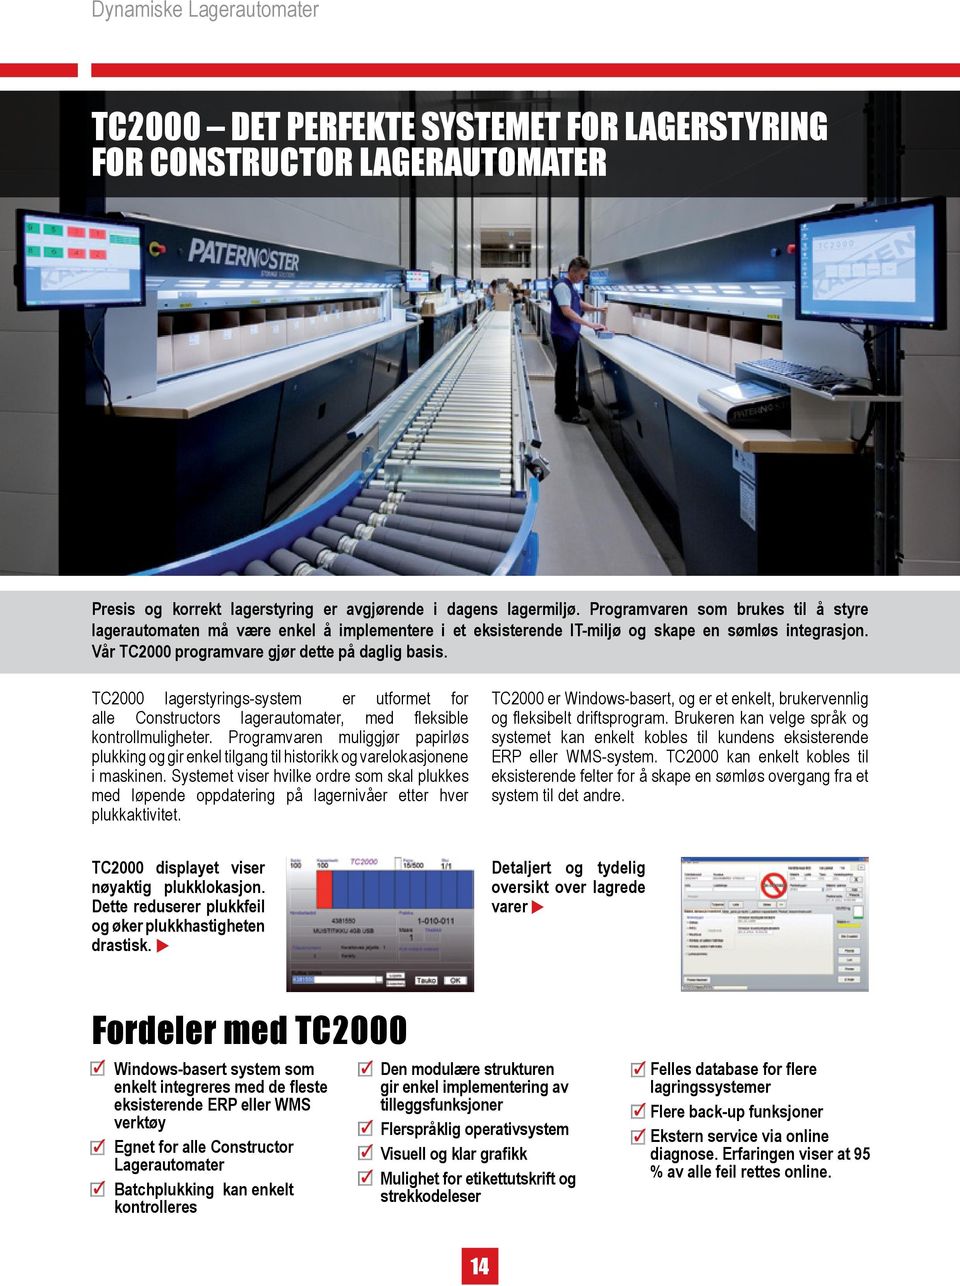 TC2000 lagerstyrings-system er utformet for alle Constructors lagerautomater, med fleksible kontrollmuligheter.